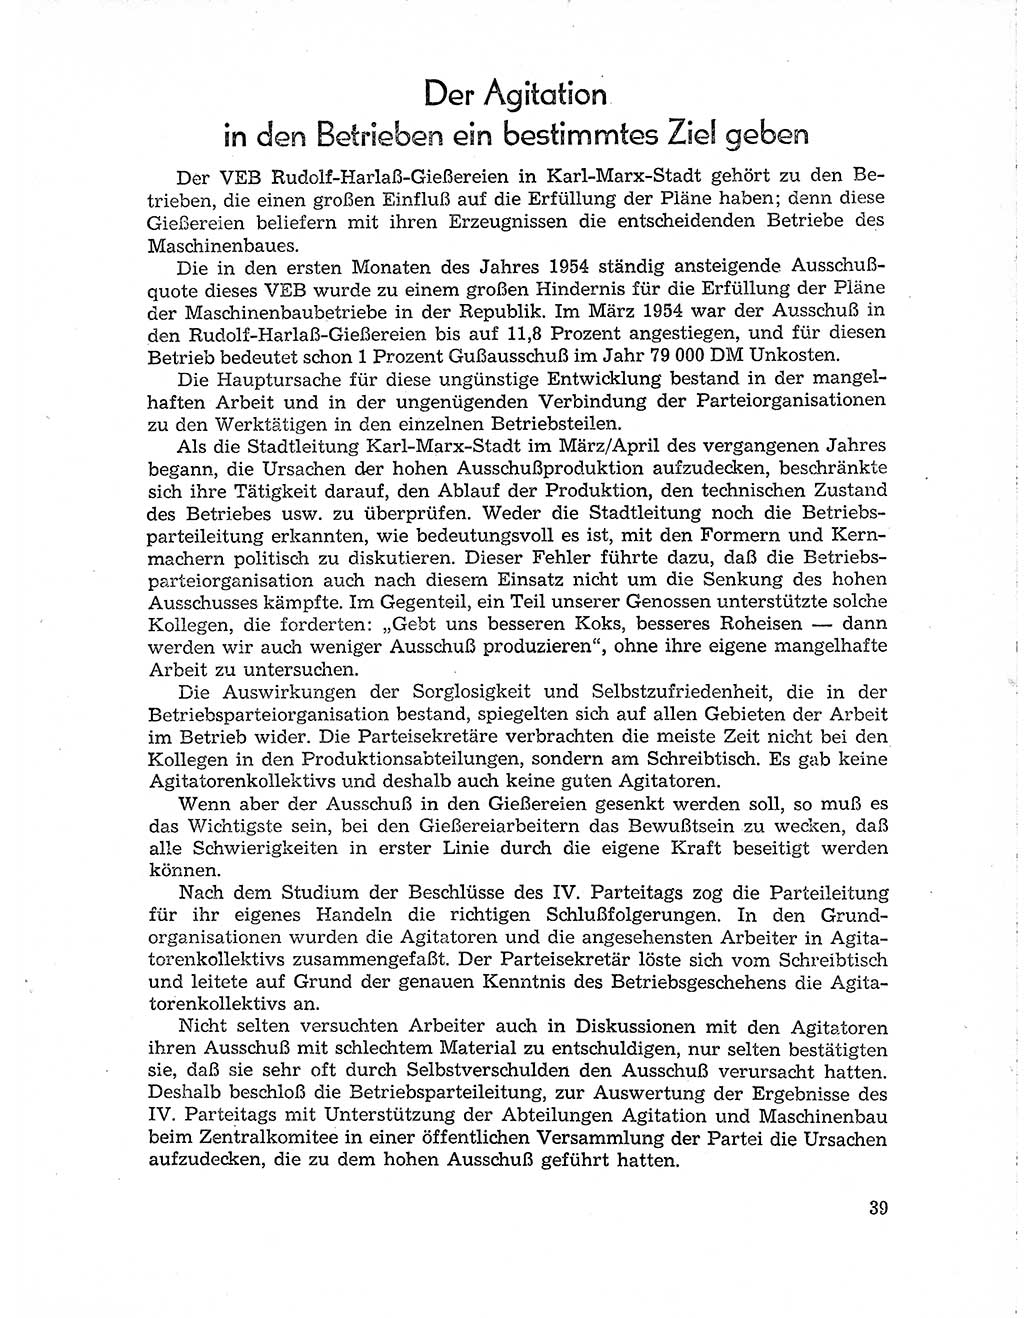 Neuer Weg (NW), Organ des Zentralkomitees (ZK) der SED (Sozialistische Einheitspartei Deutschlands) für Fragen des Parteiaufbaus und des Parteilebens, 10. Jahrgang [Deutsche Demokratische Republik (DDR)] 1955, Seite 39 (NW ZK SED DDR 1955, S. 39)